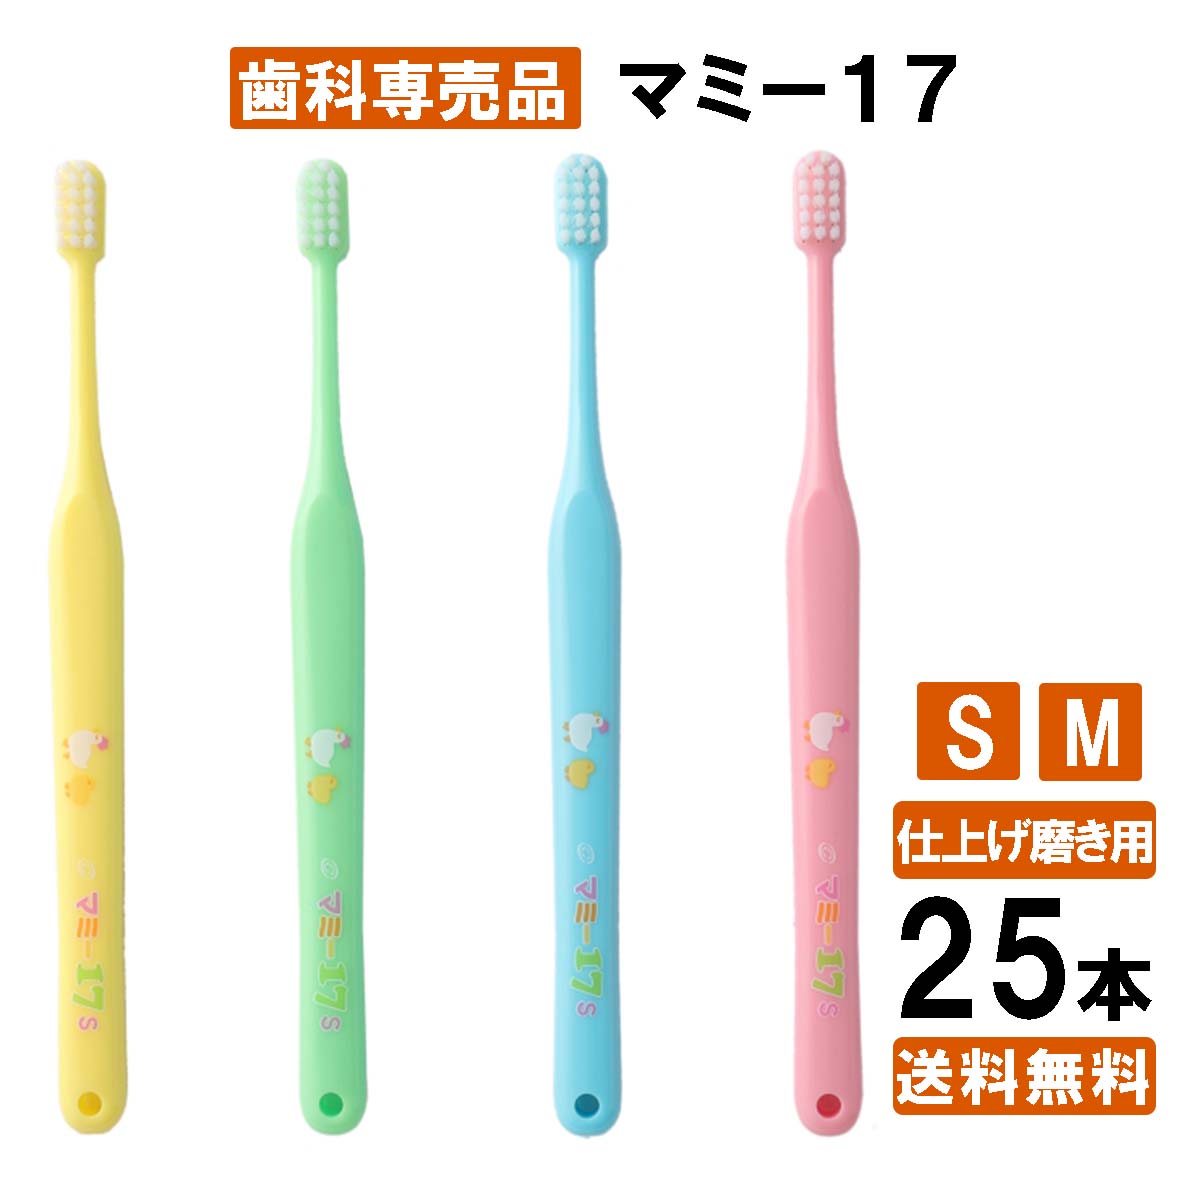  マミー17 S /M 仕上げ磨き 25本 歯ブラシ 子供 子ども オーラルケア まとめ買い 歯医者さん 歯科専用 オーラル 大容量 みがきやすい 日本製